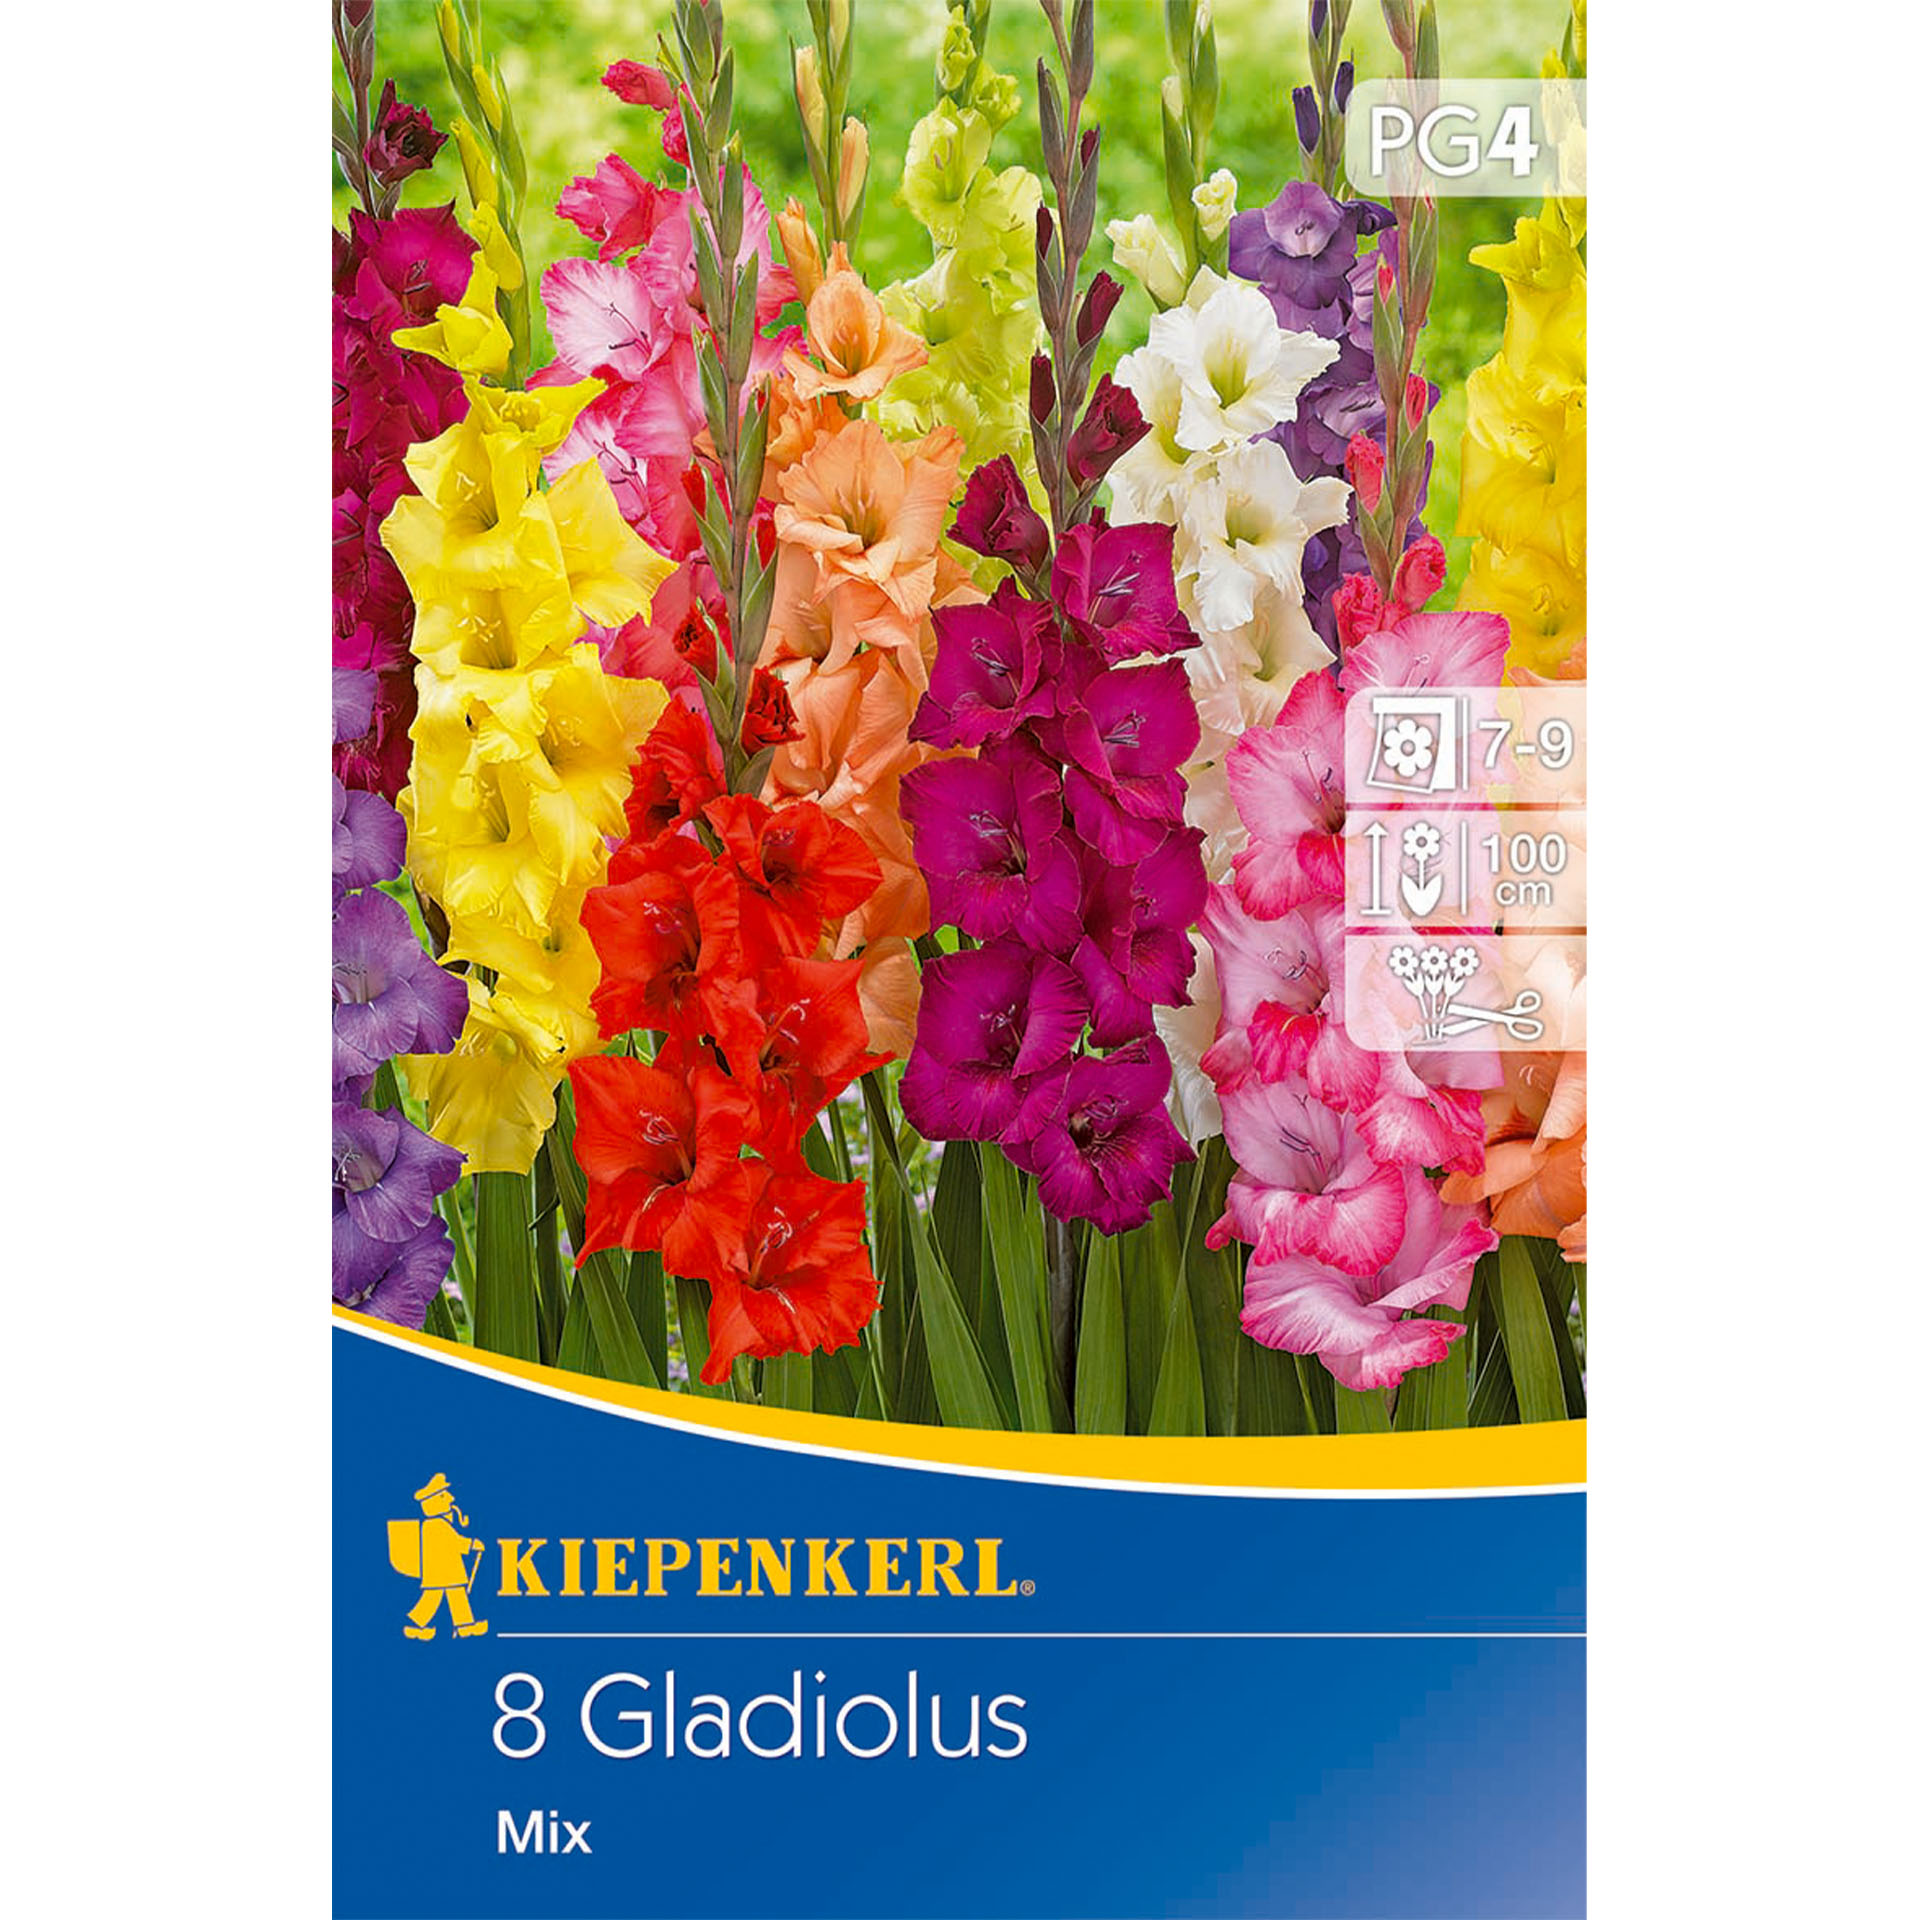 Blume, Pflanze, Gladiole